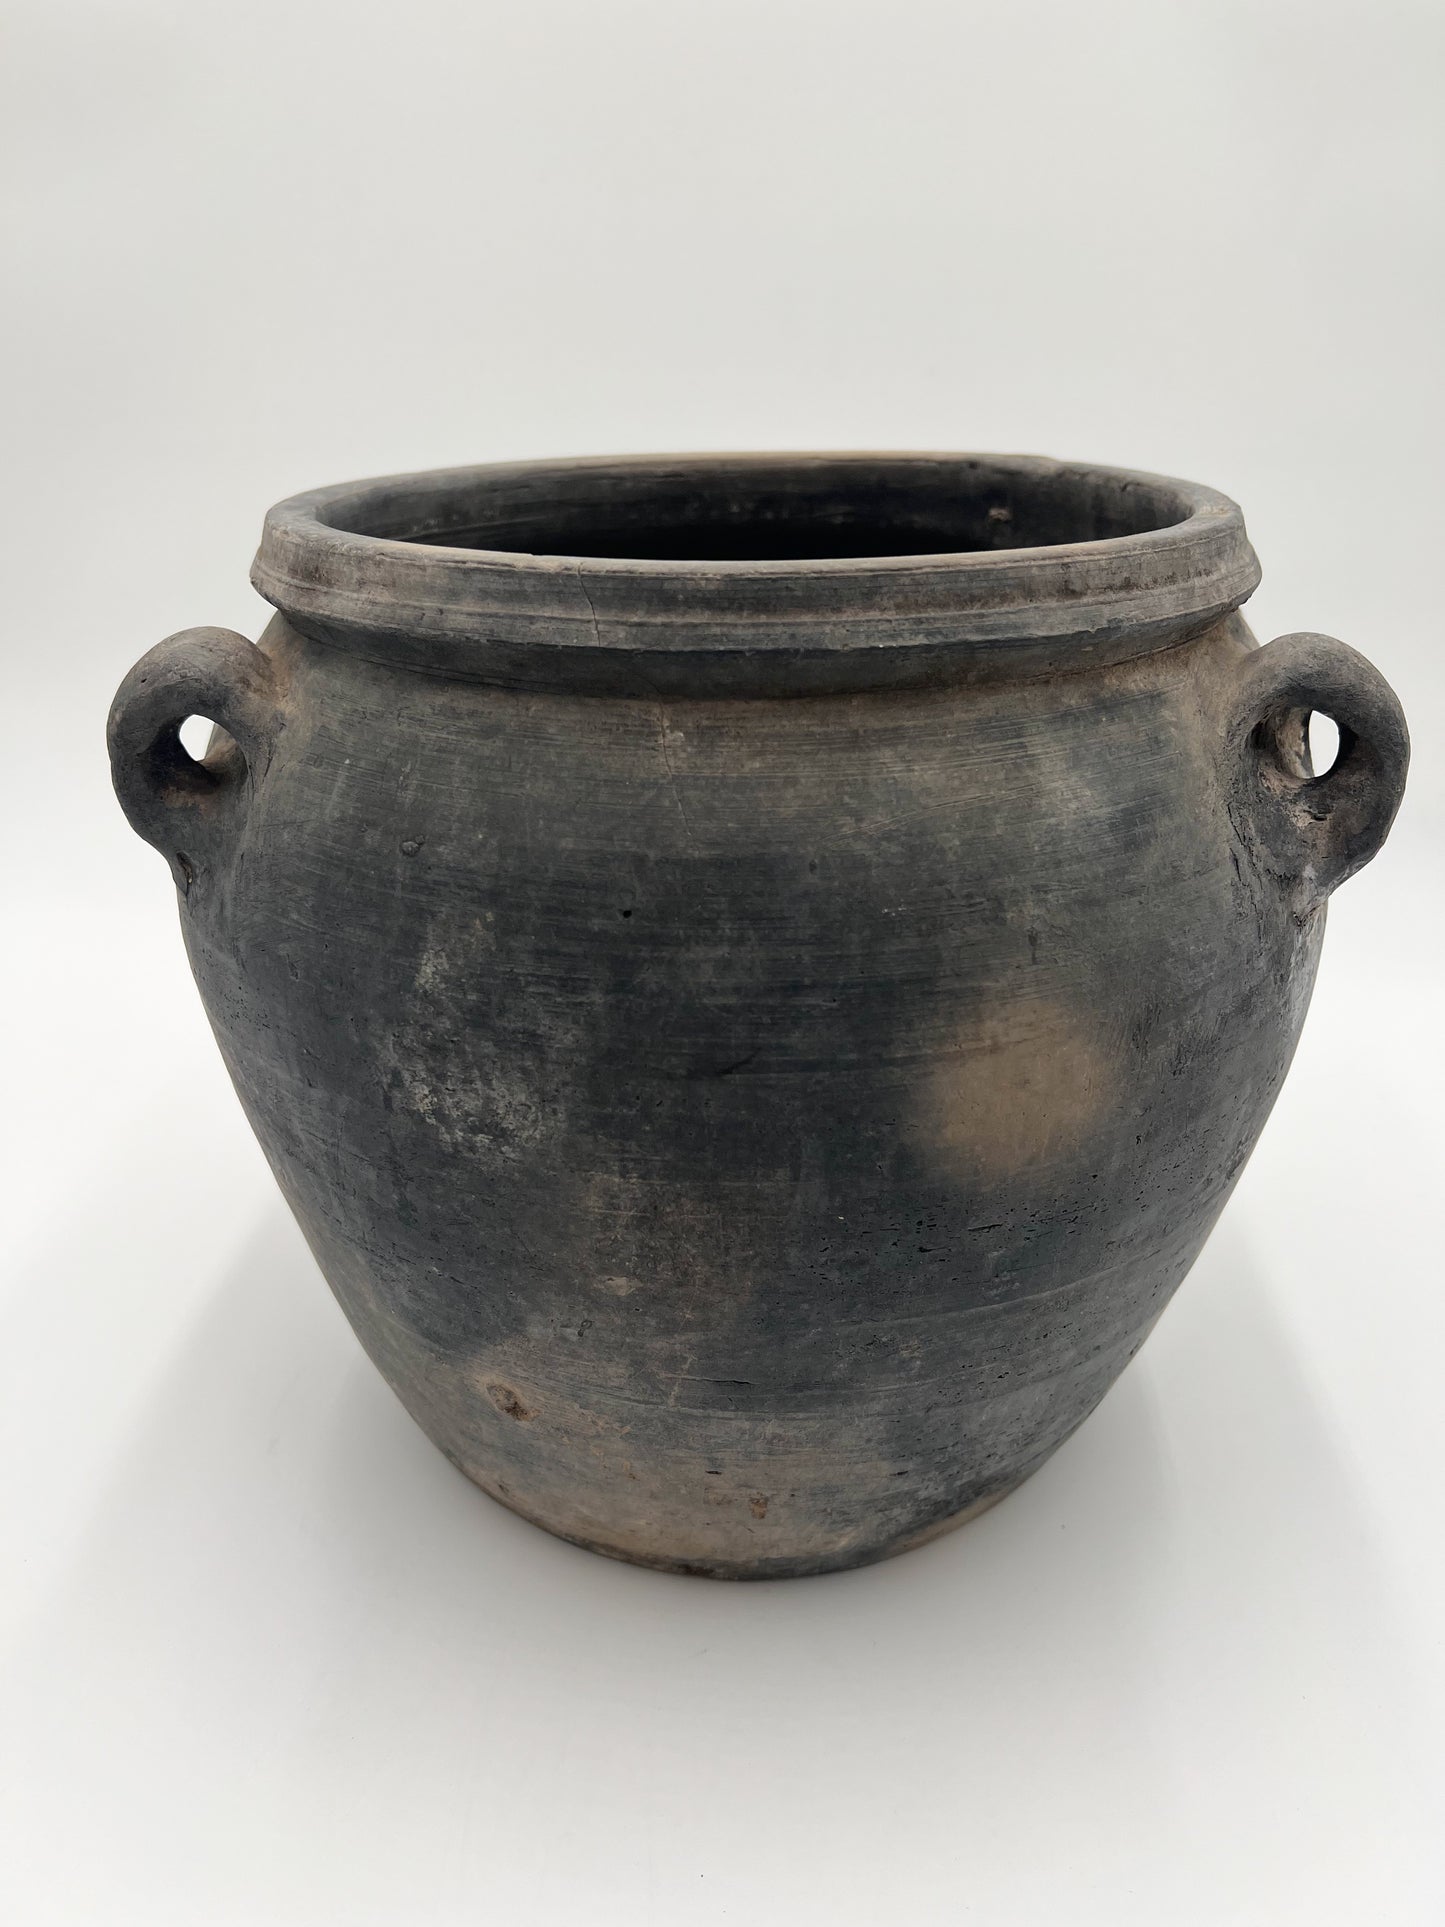 Medium Vintage Handled Jar- One of a Kind (SKU: 39)